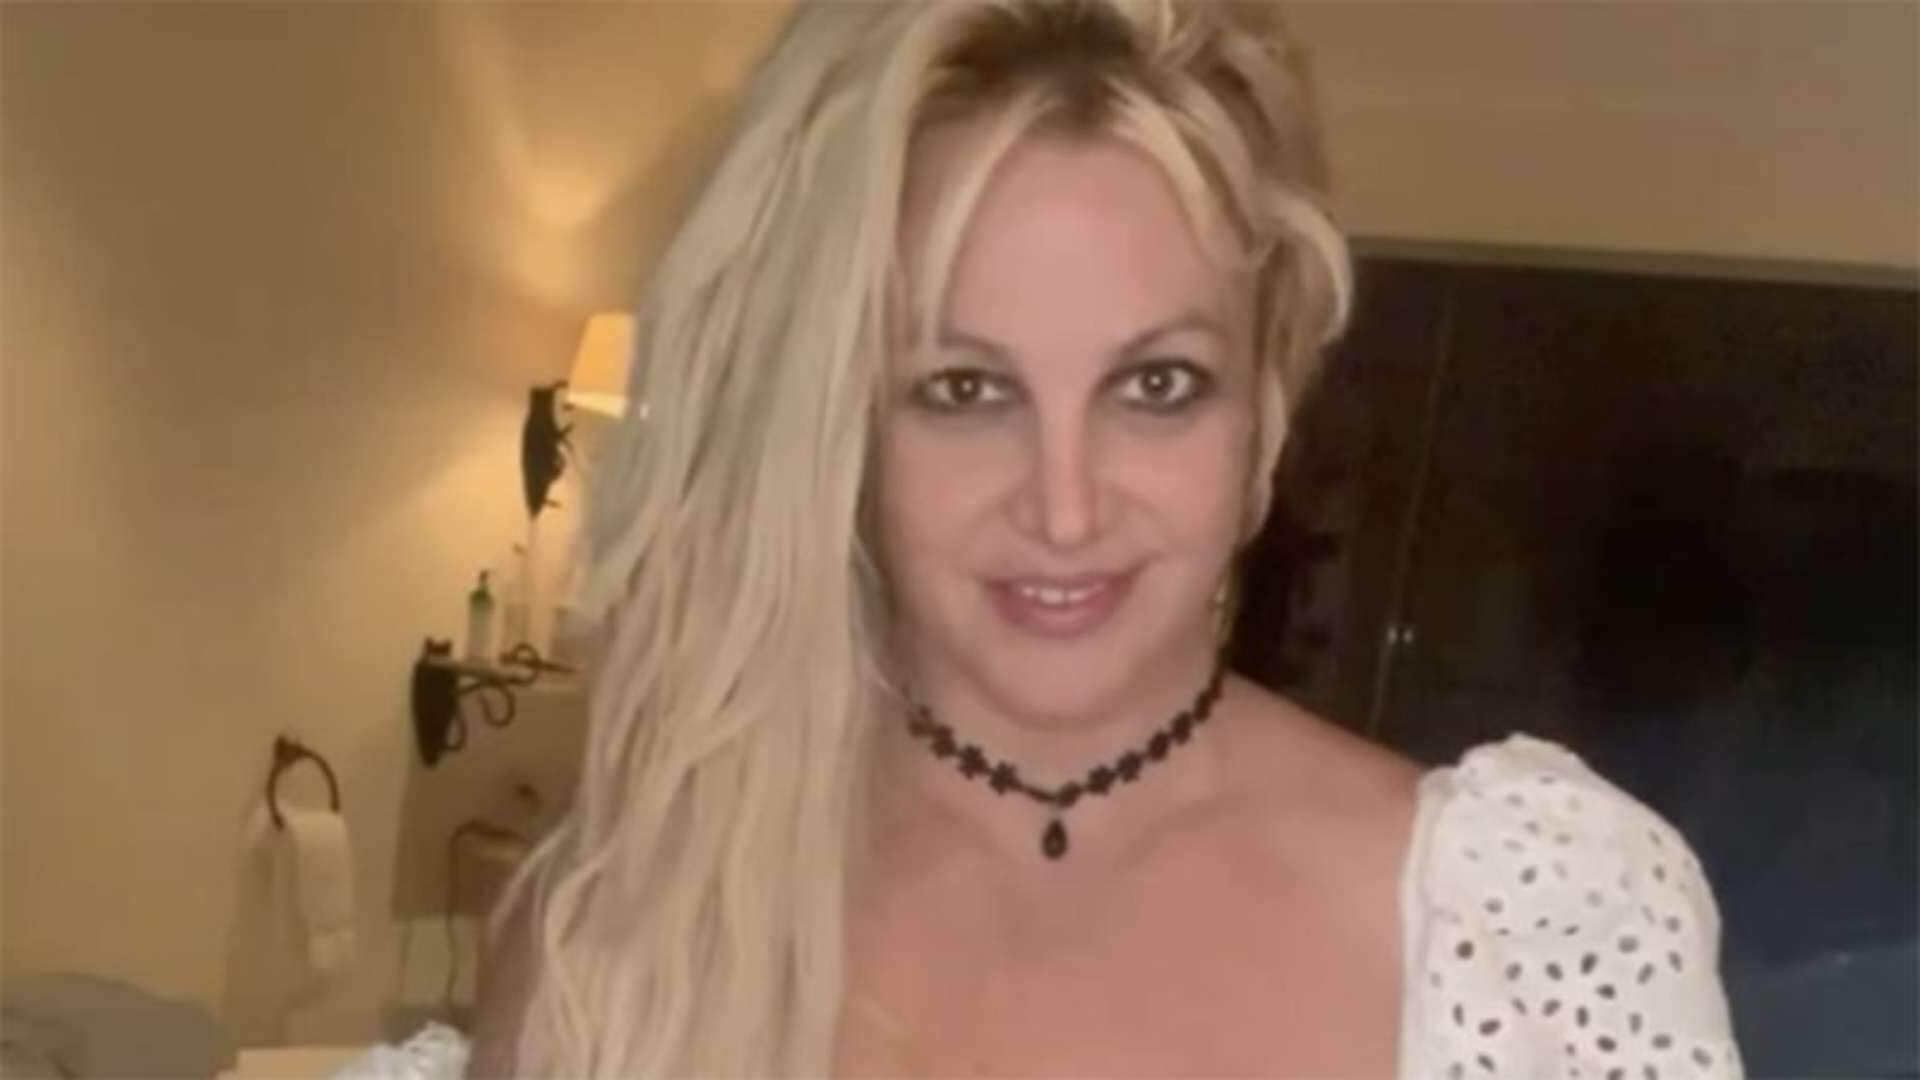 Fizeram a limpa! Britney Spears tem mansão invadida e divulga vídeo chocante: “Estou assustada” - Metropolitana FM